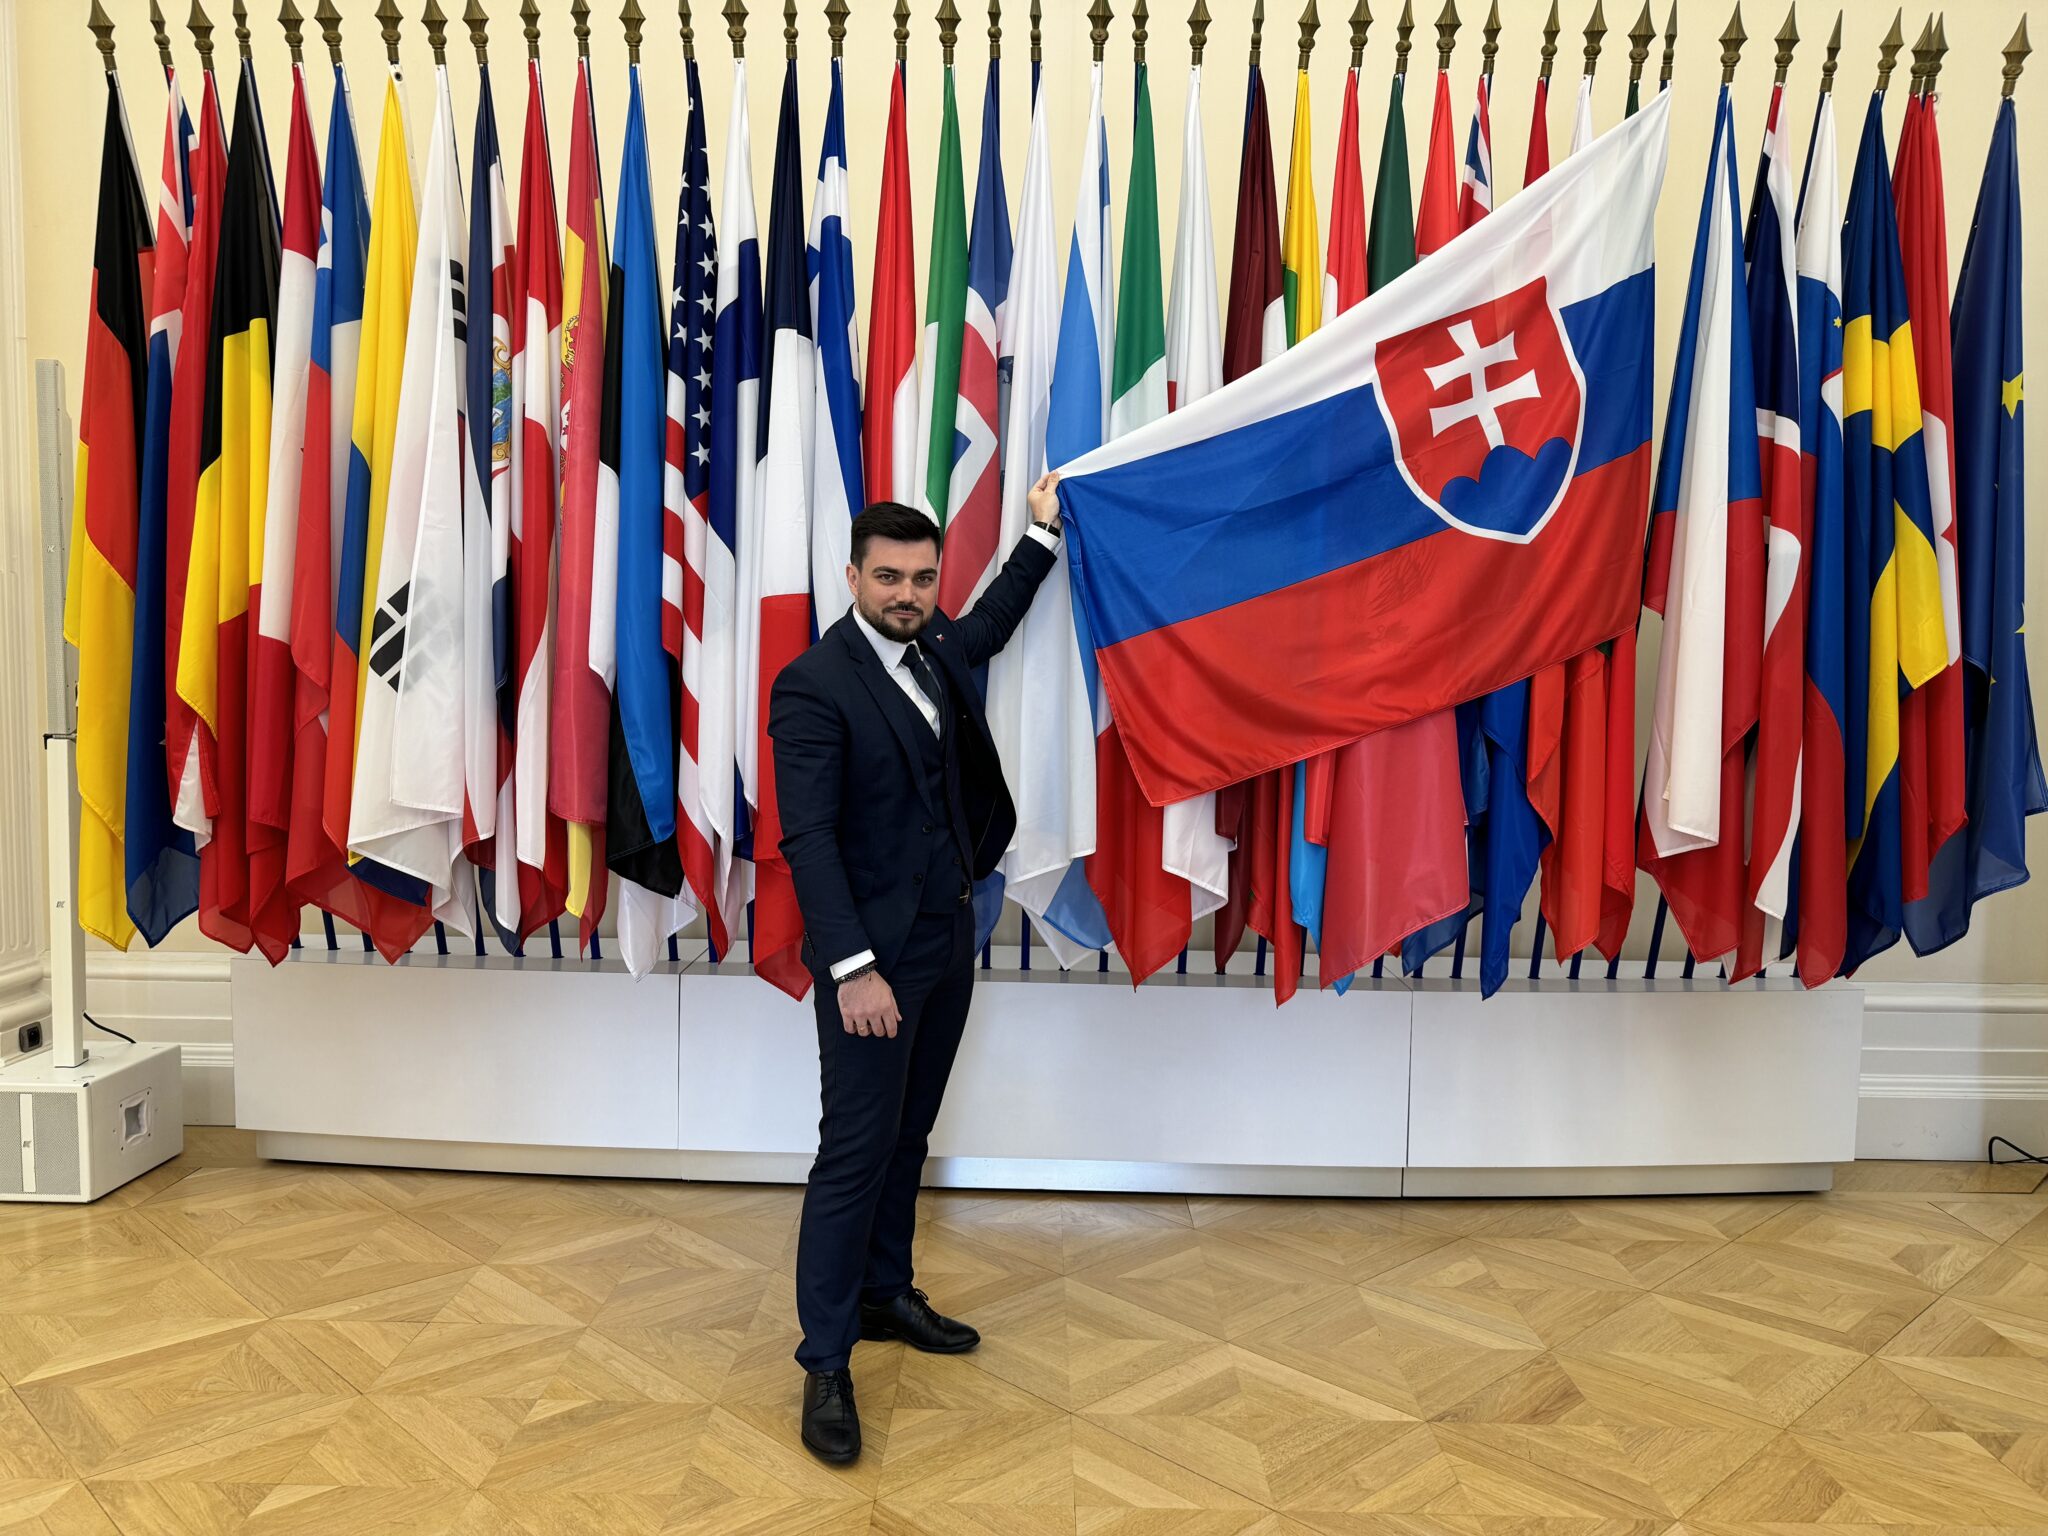 Štátny tajomník Ivančin na zasadnutí ministerskej rady OECD: Slovensko otvorilo globálnu diskusiu o kľúčových opatreniach v oblasti umelej inteligencie